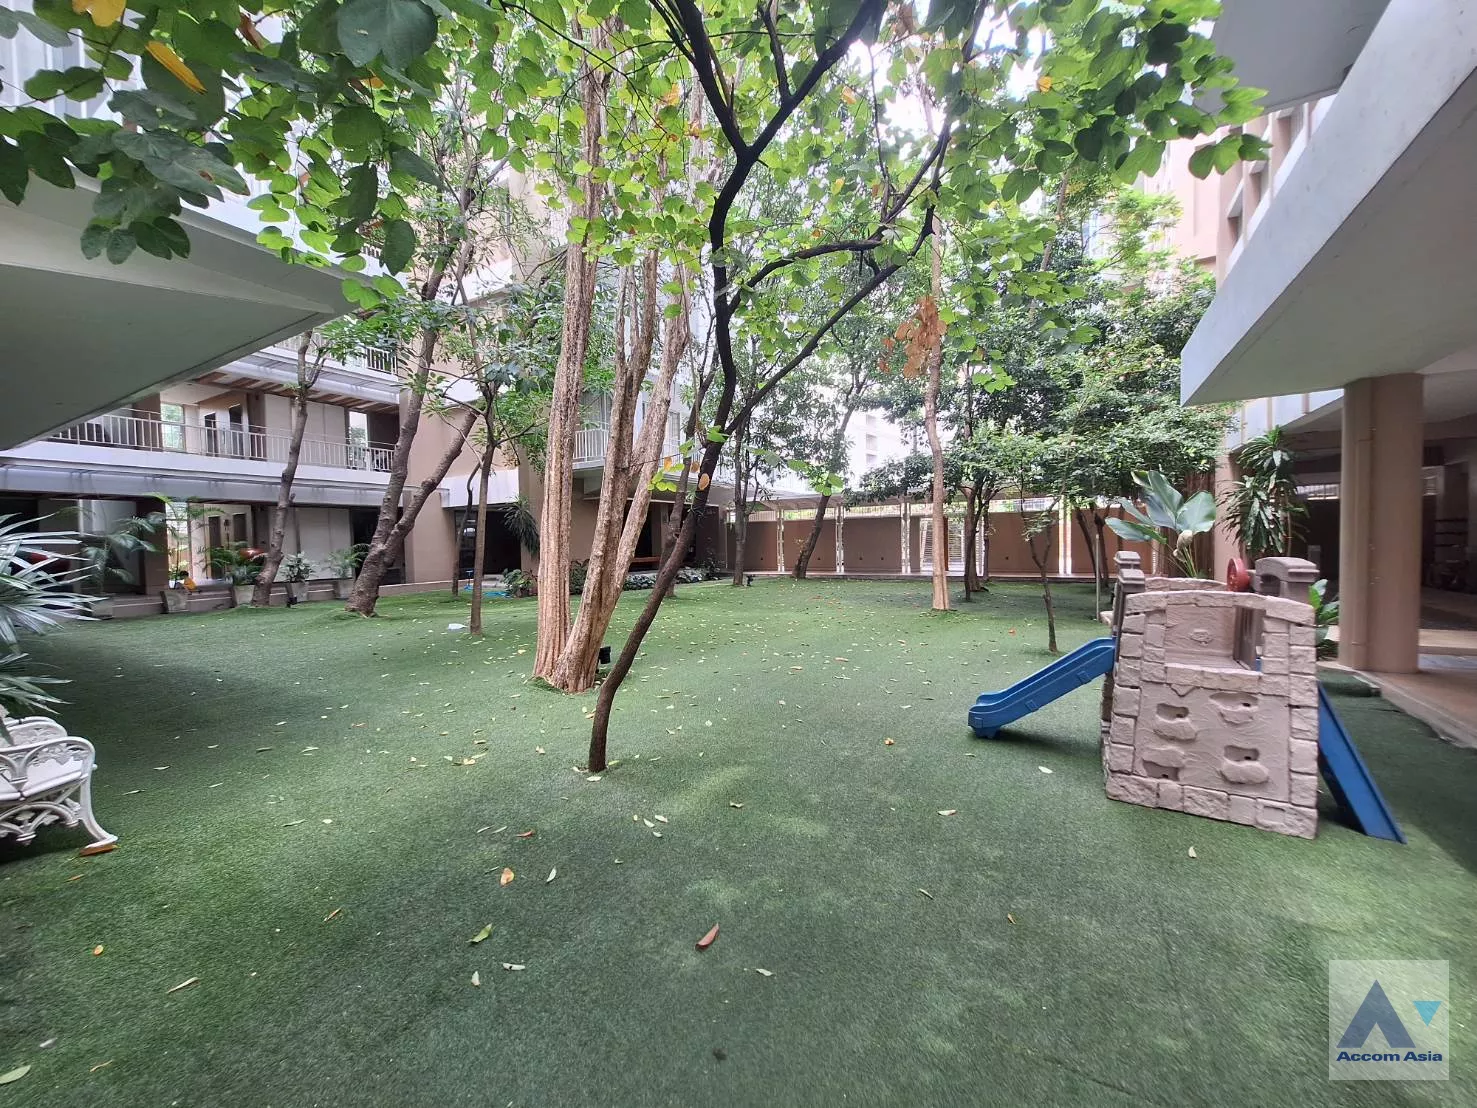 6 The Greenery Low rise - Apartment - Sukhumvit - Bangkok / Accomasia